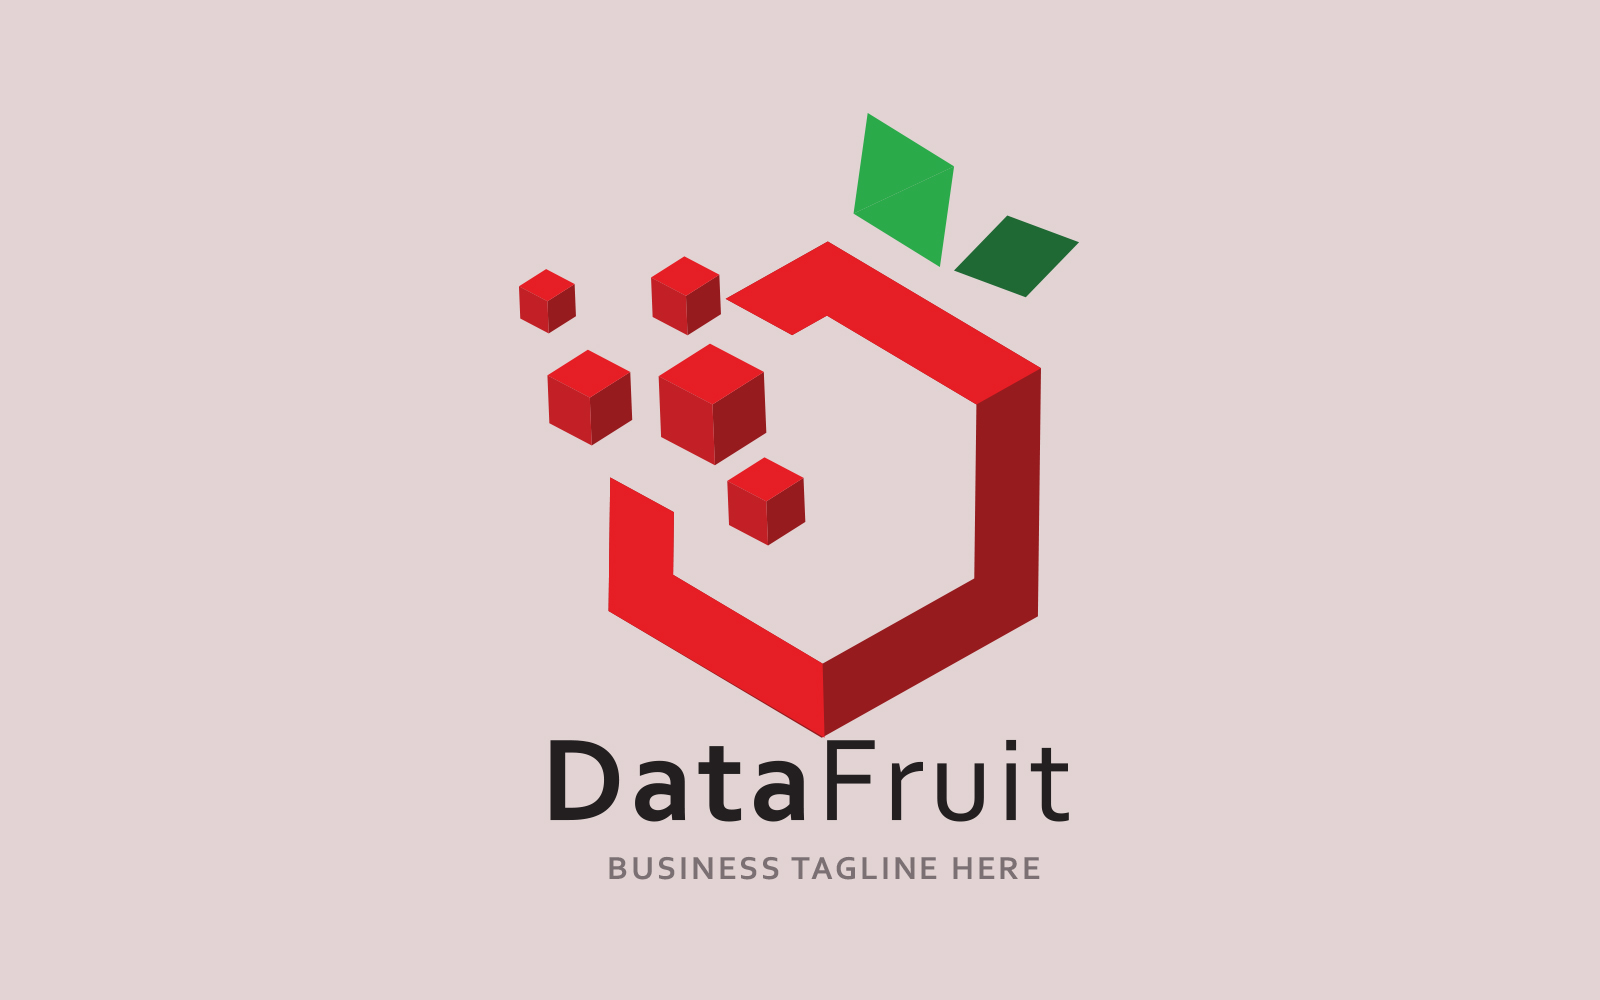 THE Design Data Fruit Logo